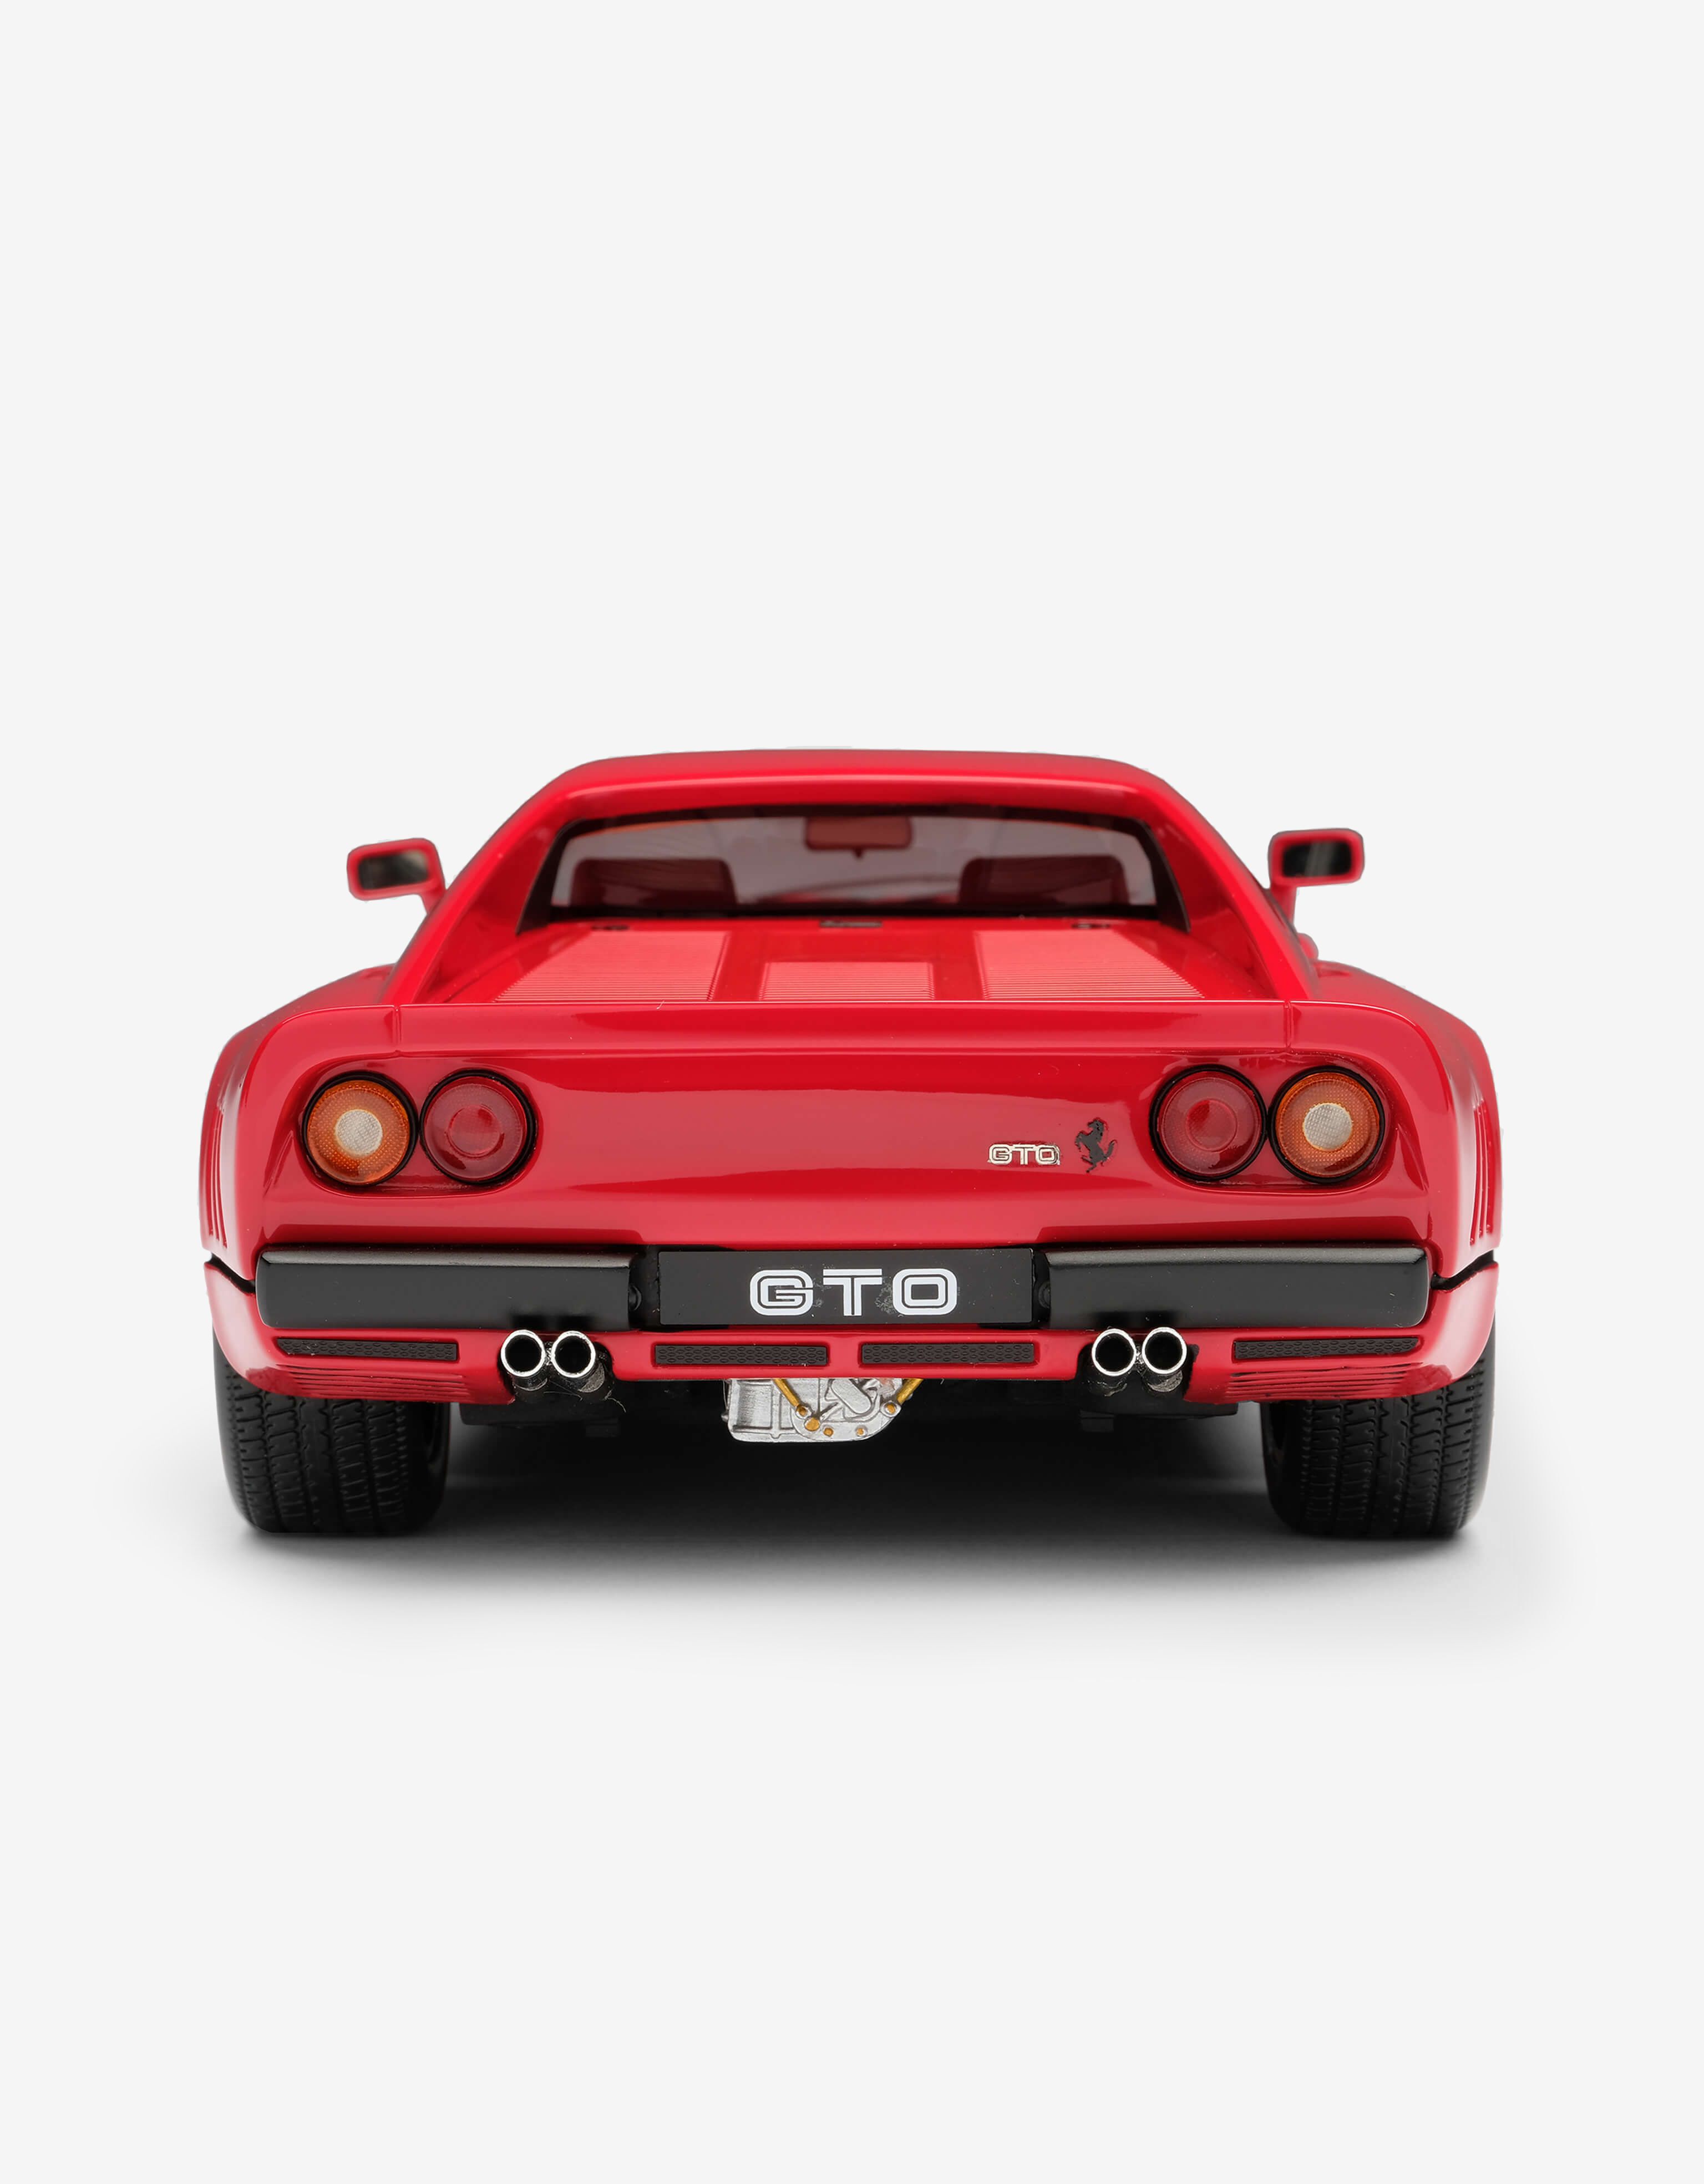 Ferrari Ferrari 288 GTO Le Mans model in 1:18 scale 红色 L7812f